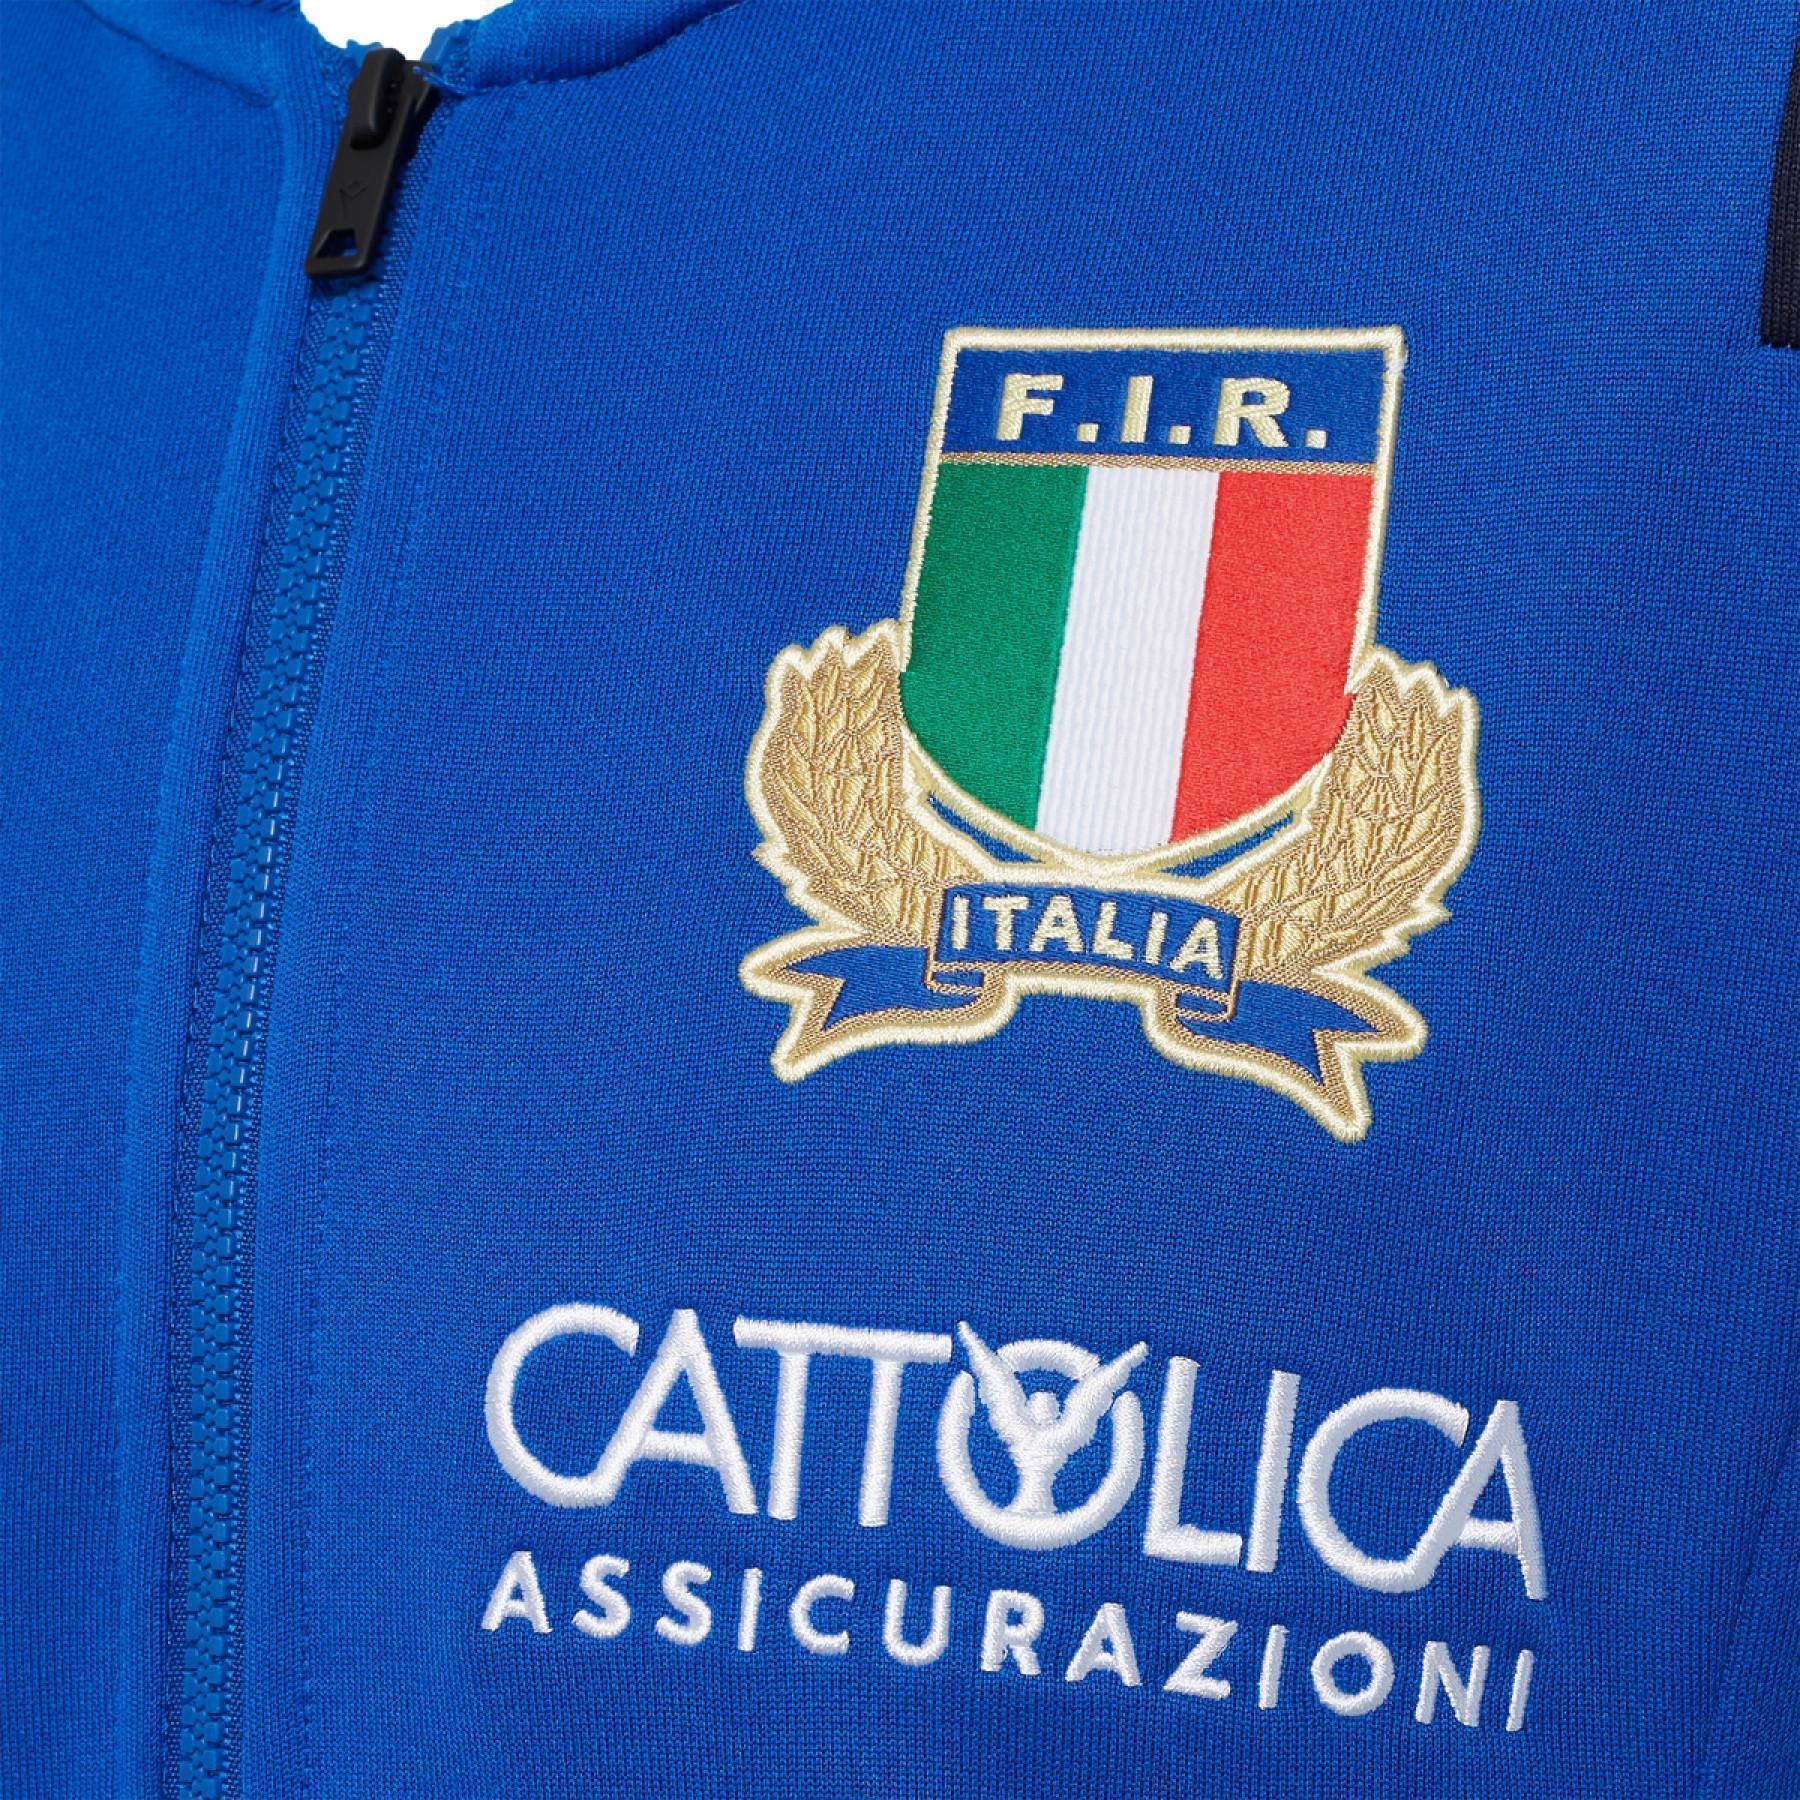 Kinder-Reise-Sweatshirt Italien rugby 2020/21